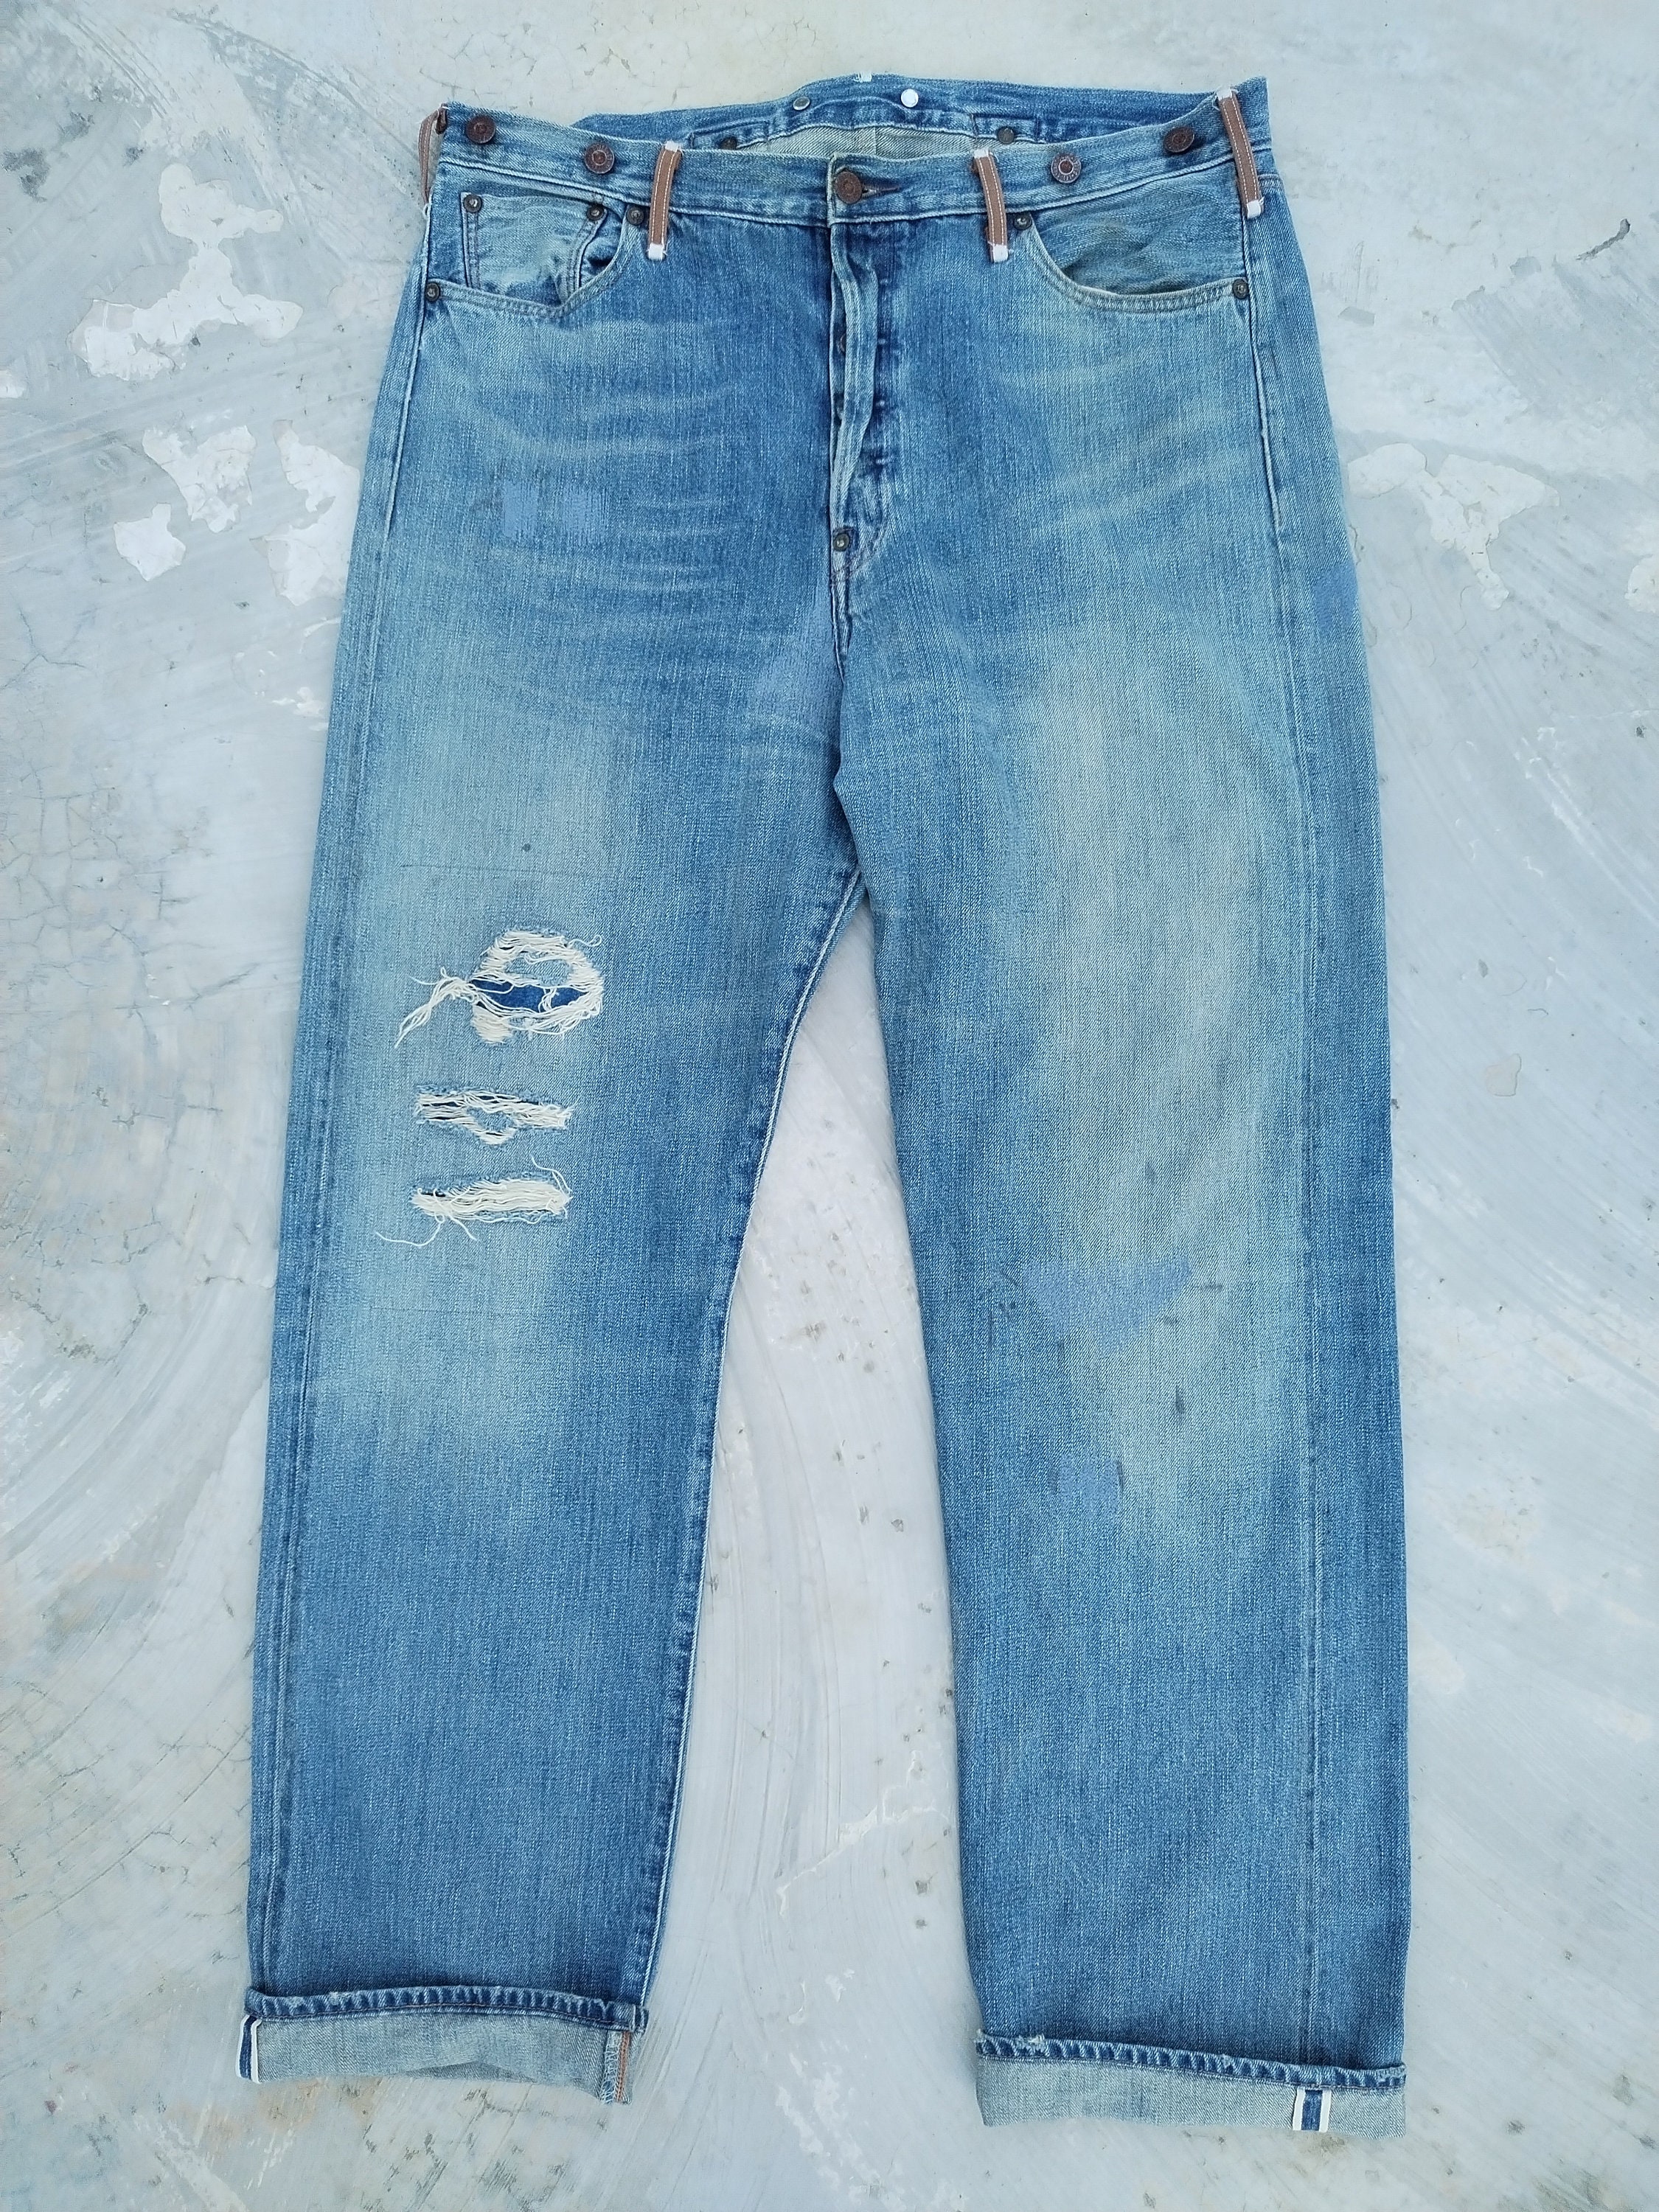 LEVIS VINTAGE CLOTHING LVC 1933 501XX Selvedge Jeans Distressed